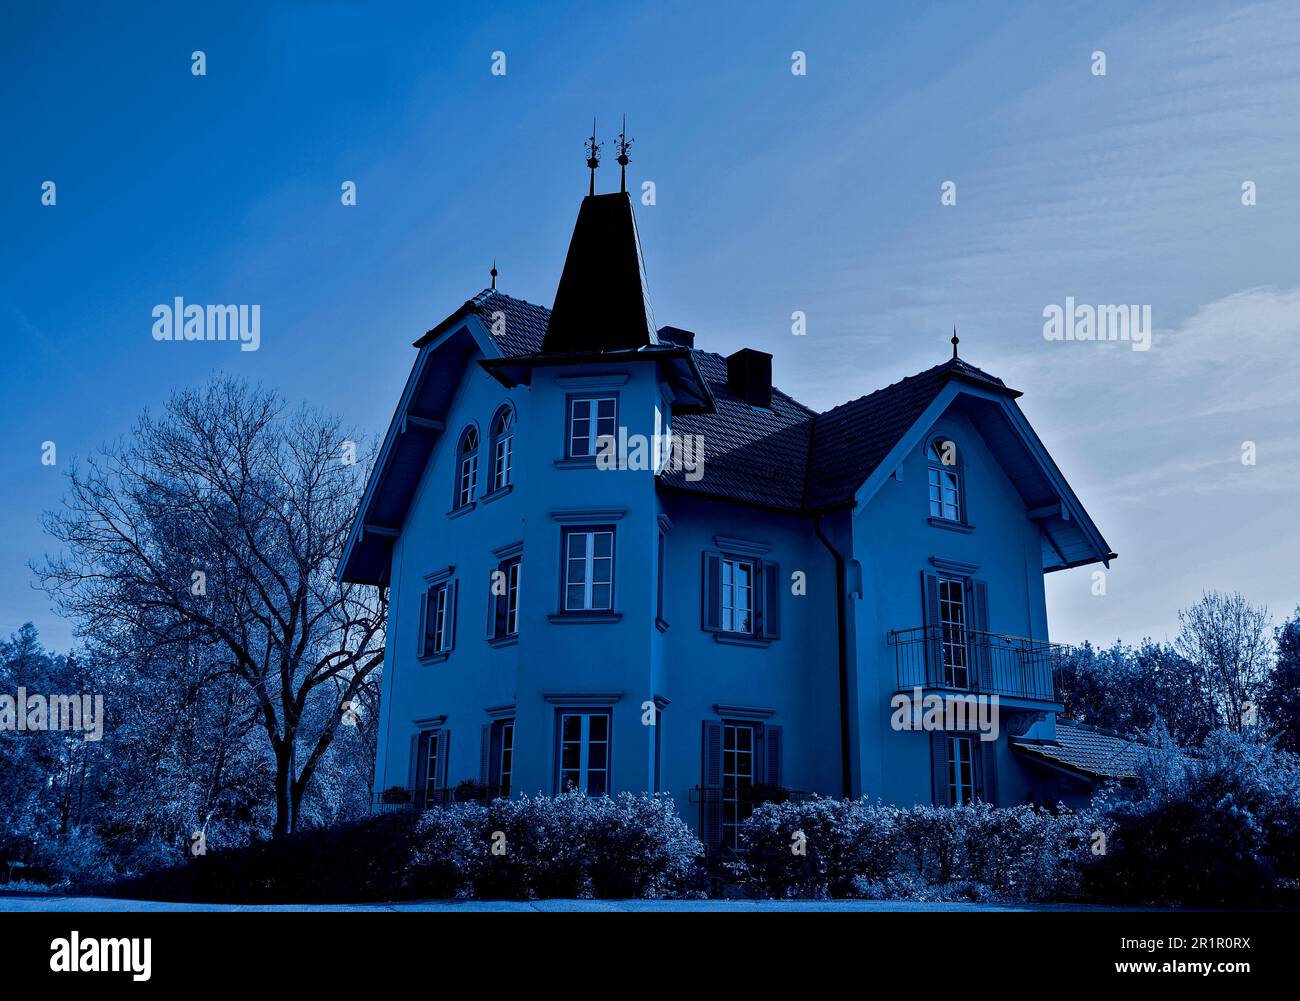 Deutschland, Bayern, Oberbayern, Chiemgau, Villa, Altes Gebäude, Einzel, Abend, Dämmerung, Bild Nacht blau Stockfoto